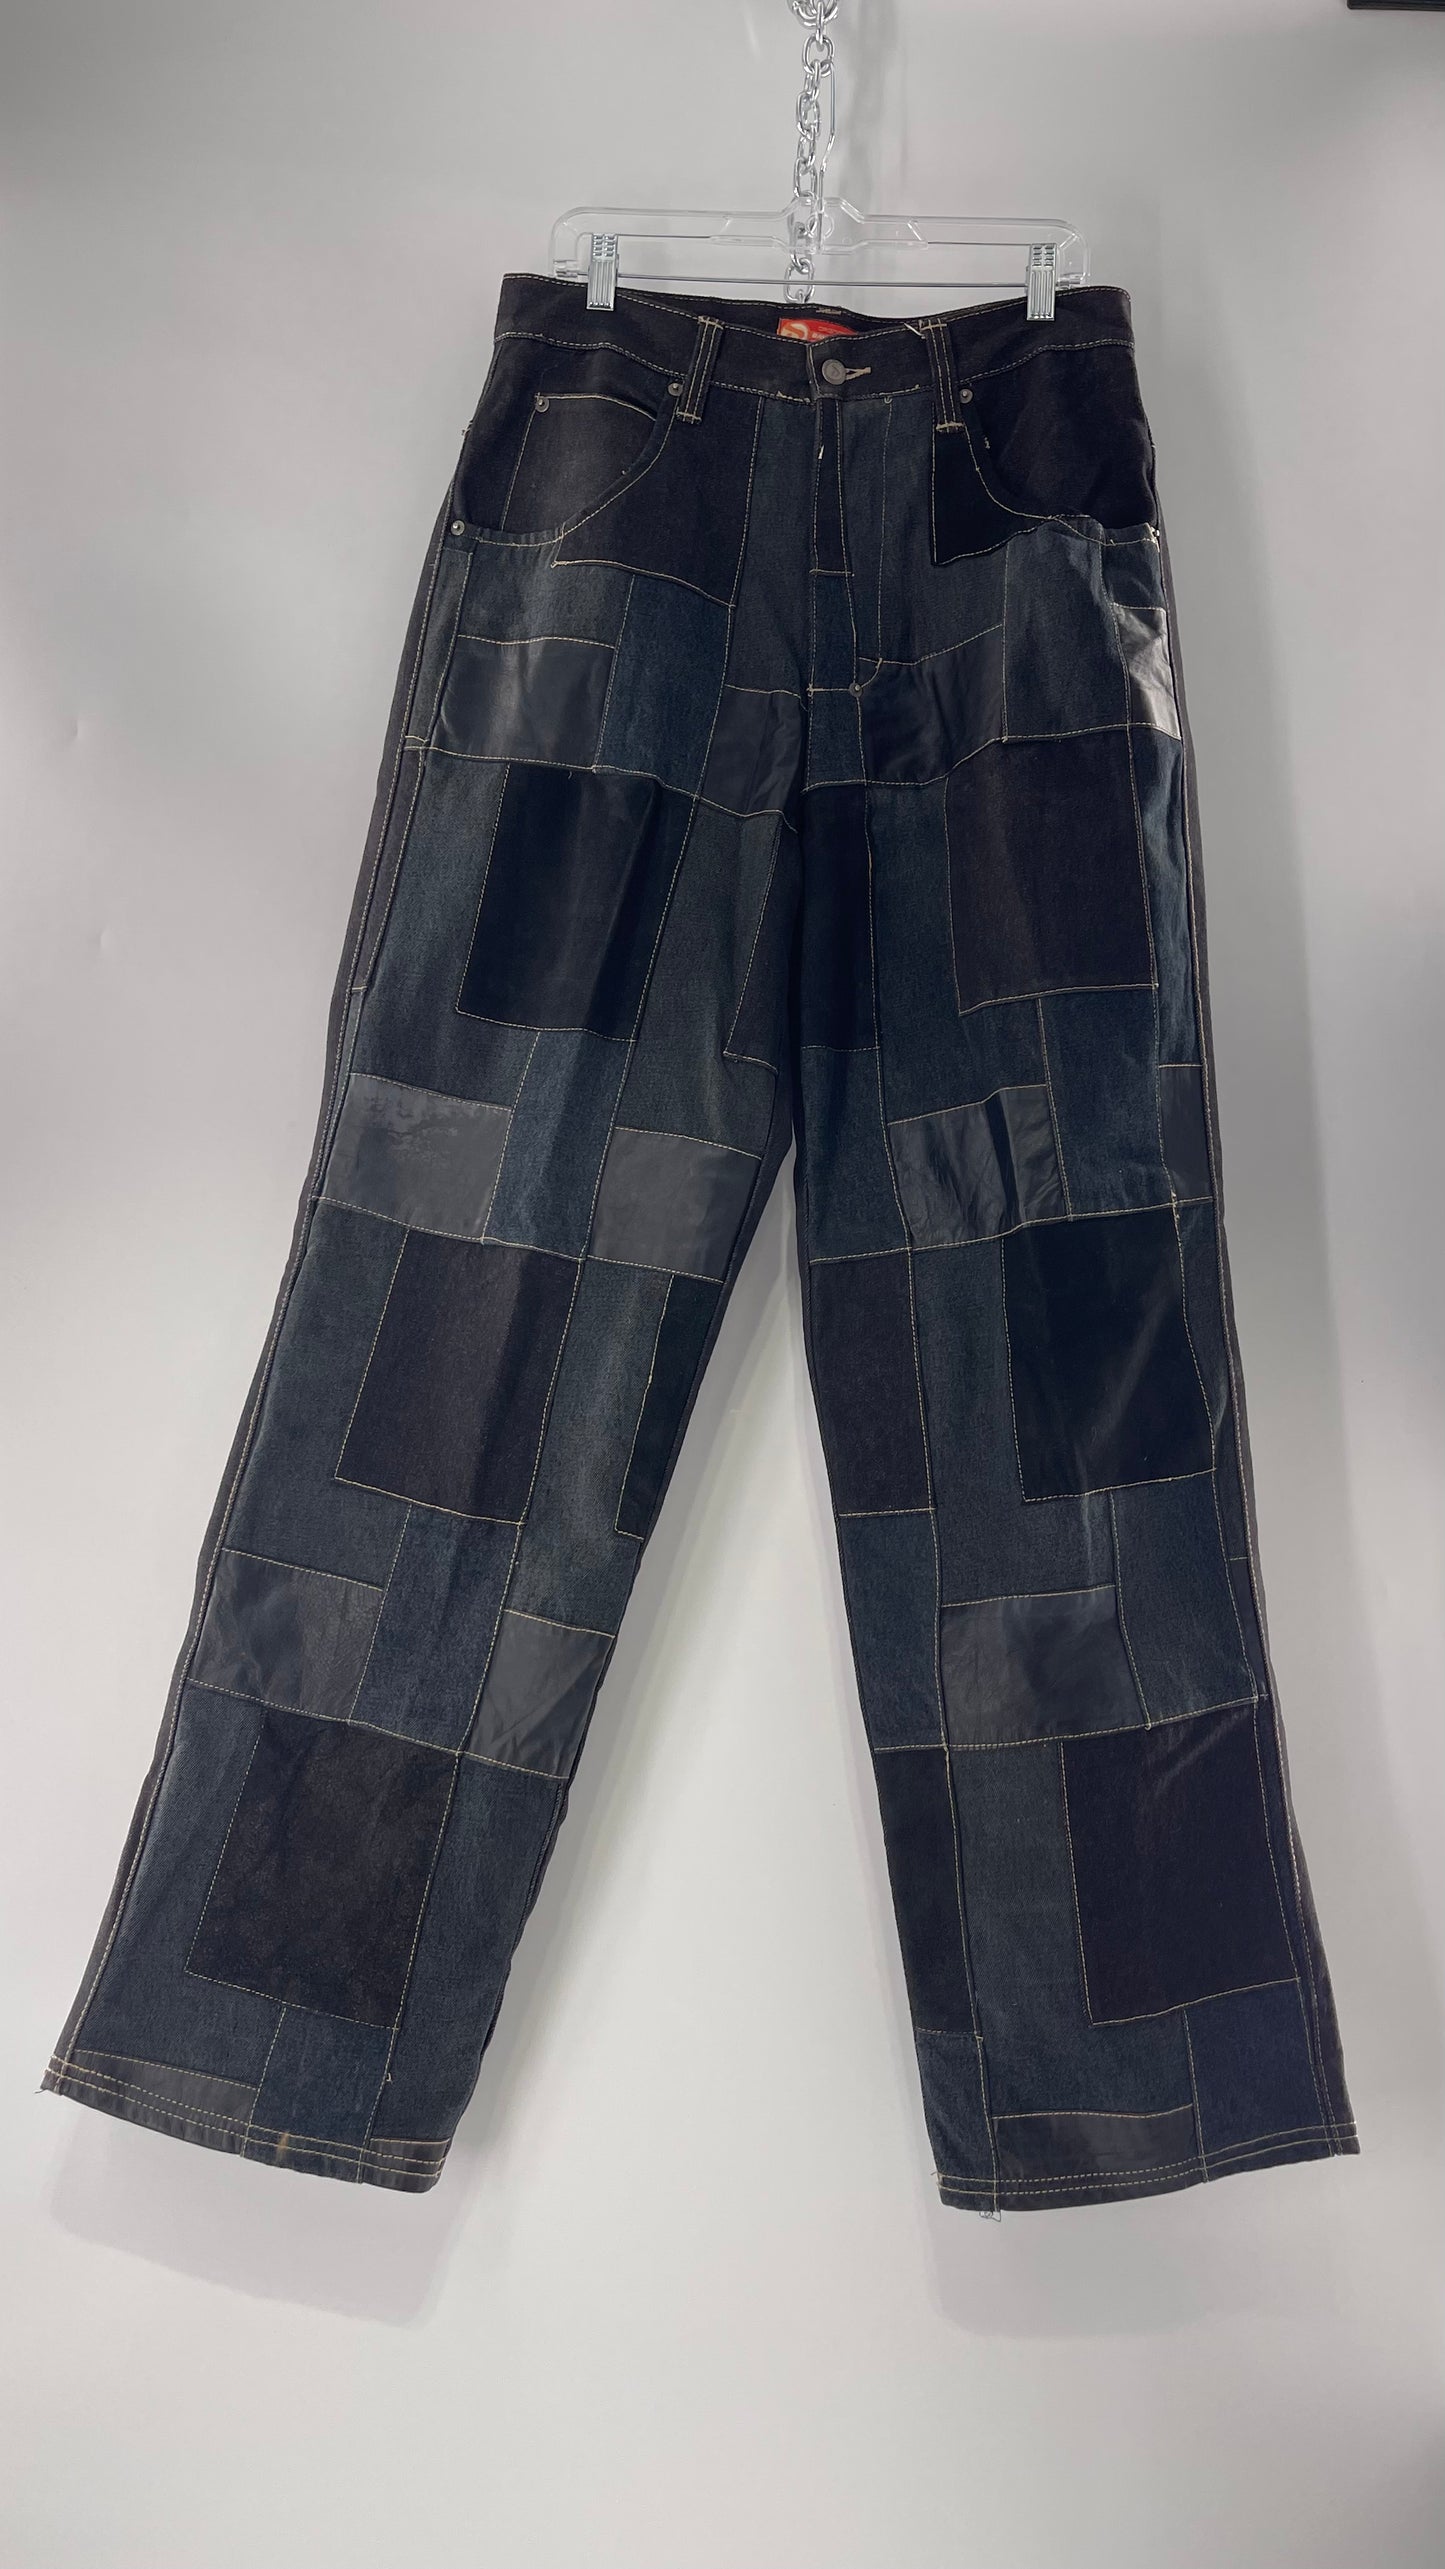 Vintage Original Davoucci Dark Wash Denim with Suede Leather Checker Patchwork Front (34x33)